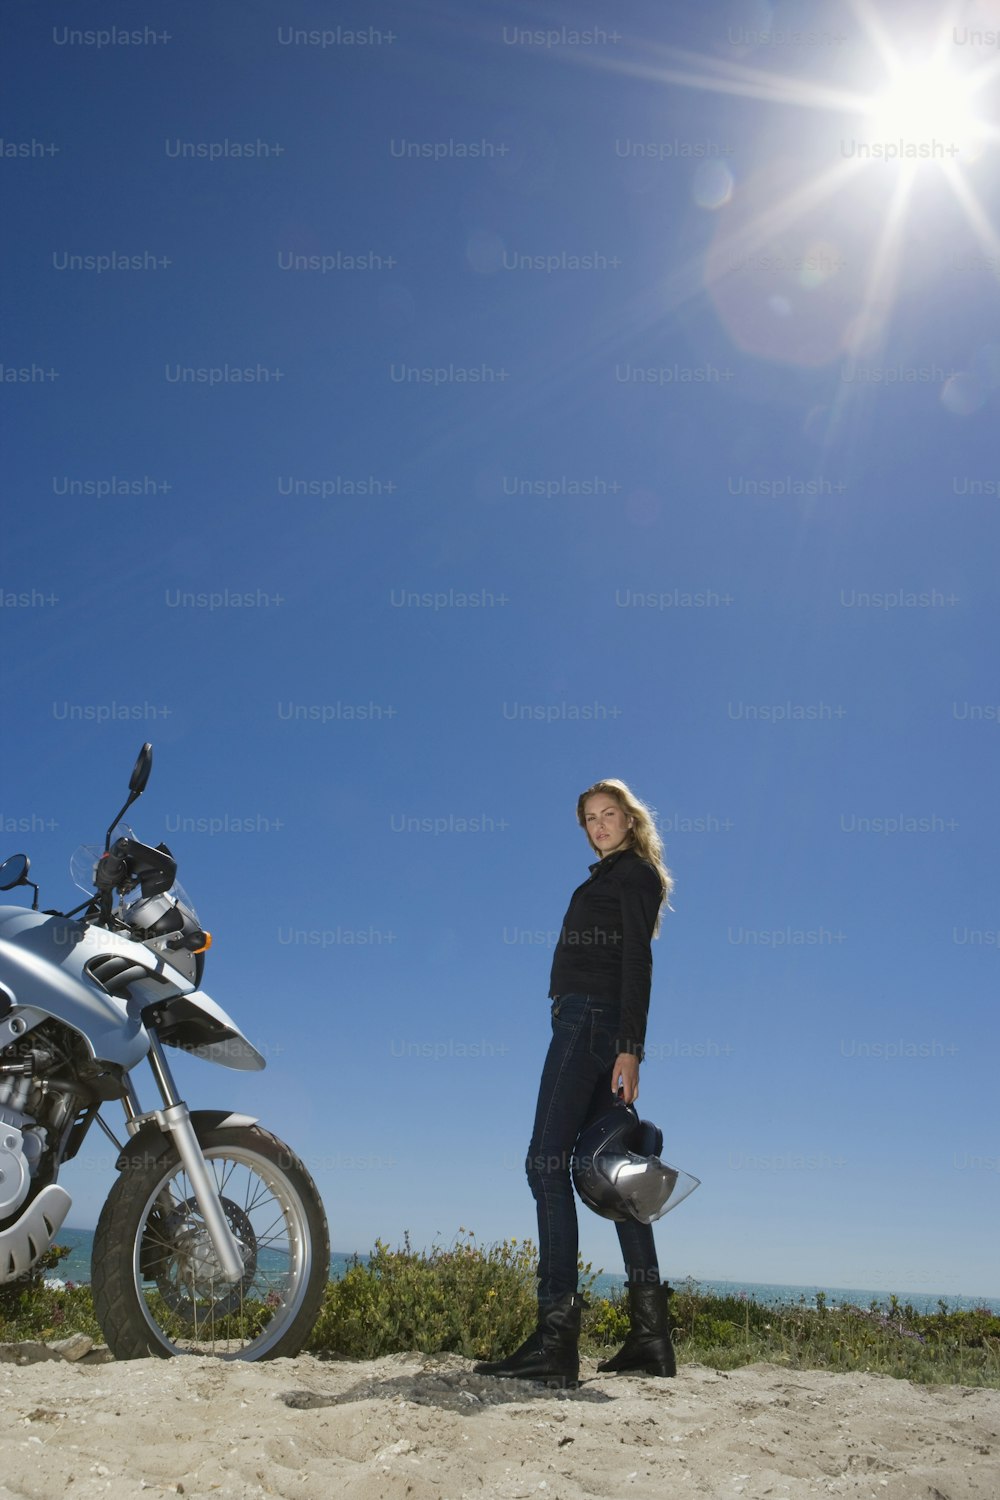 Una mujer parada junto a una motocicleta en una playa